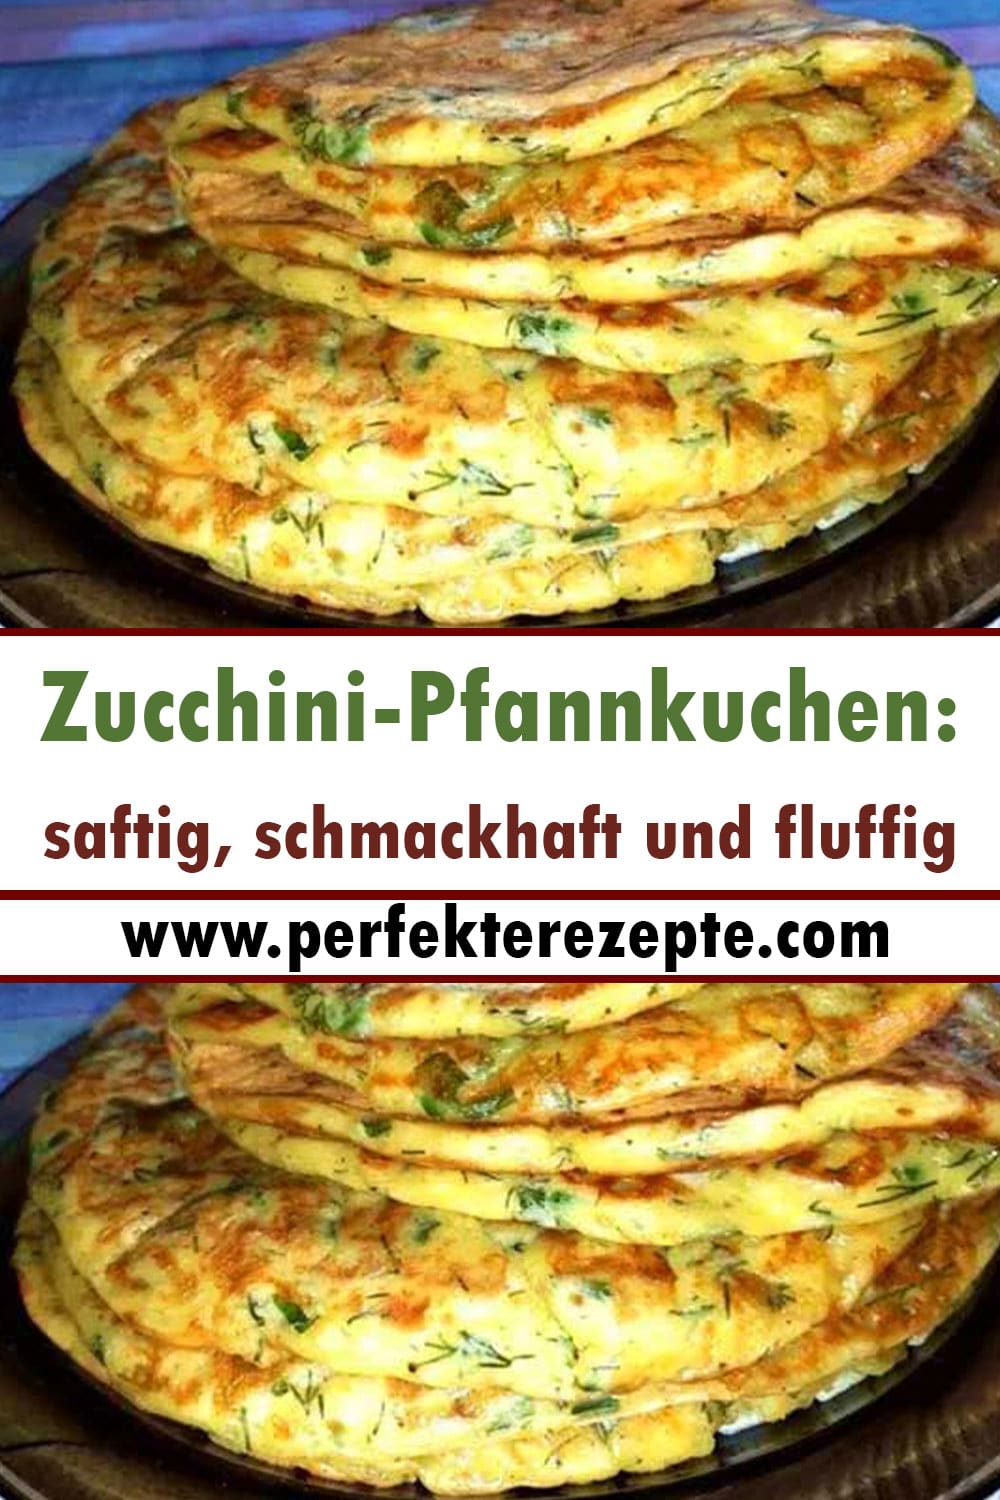 Zucchini-Pfannkuchen: saftig, schmackhaft und fluffig Rezept